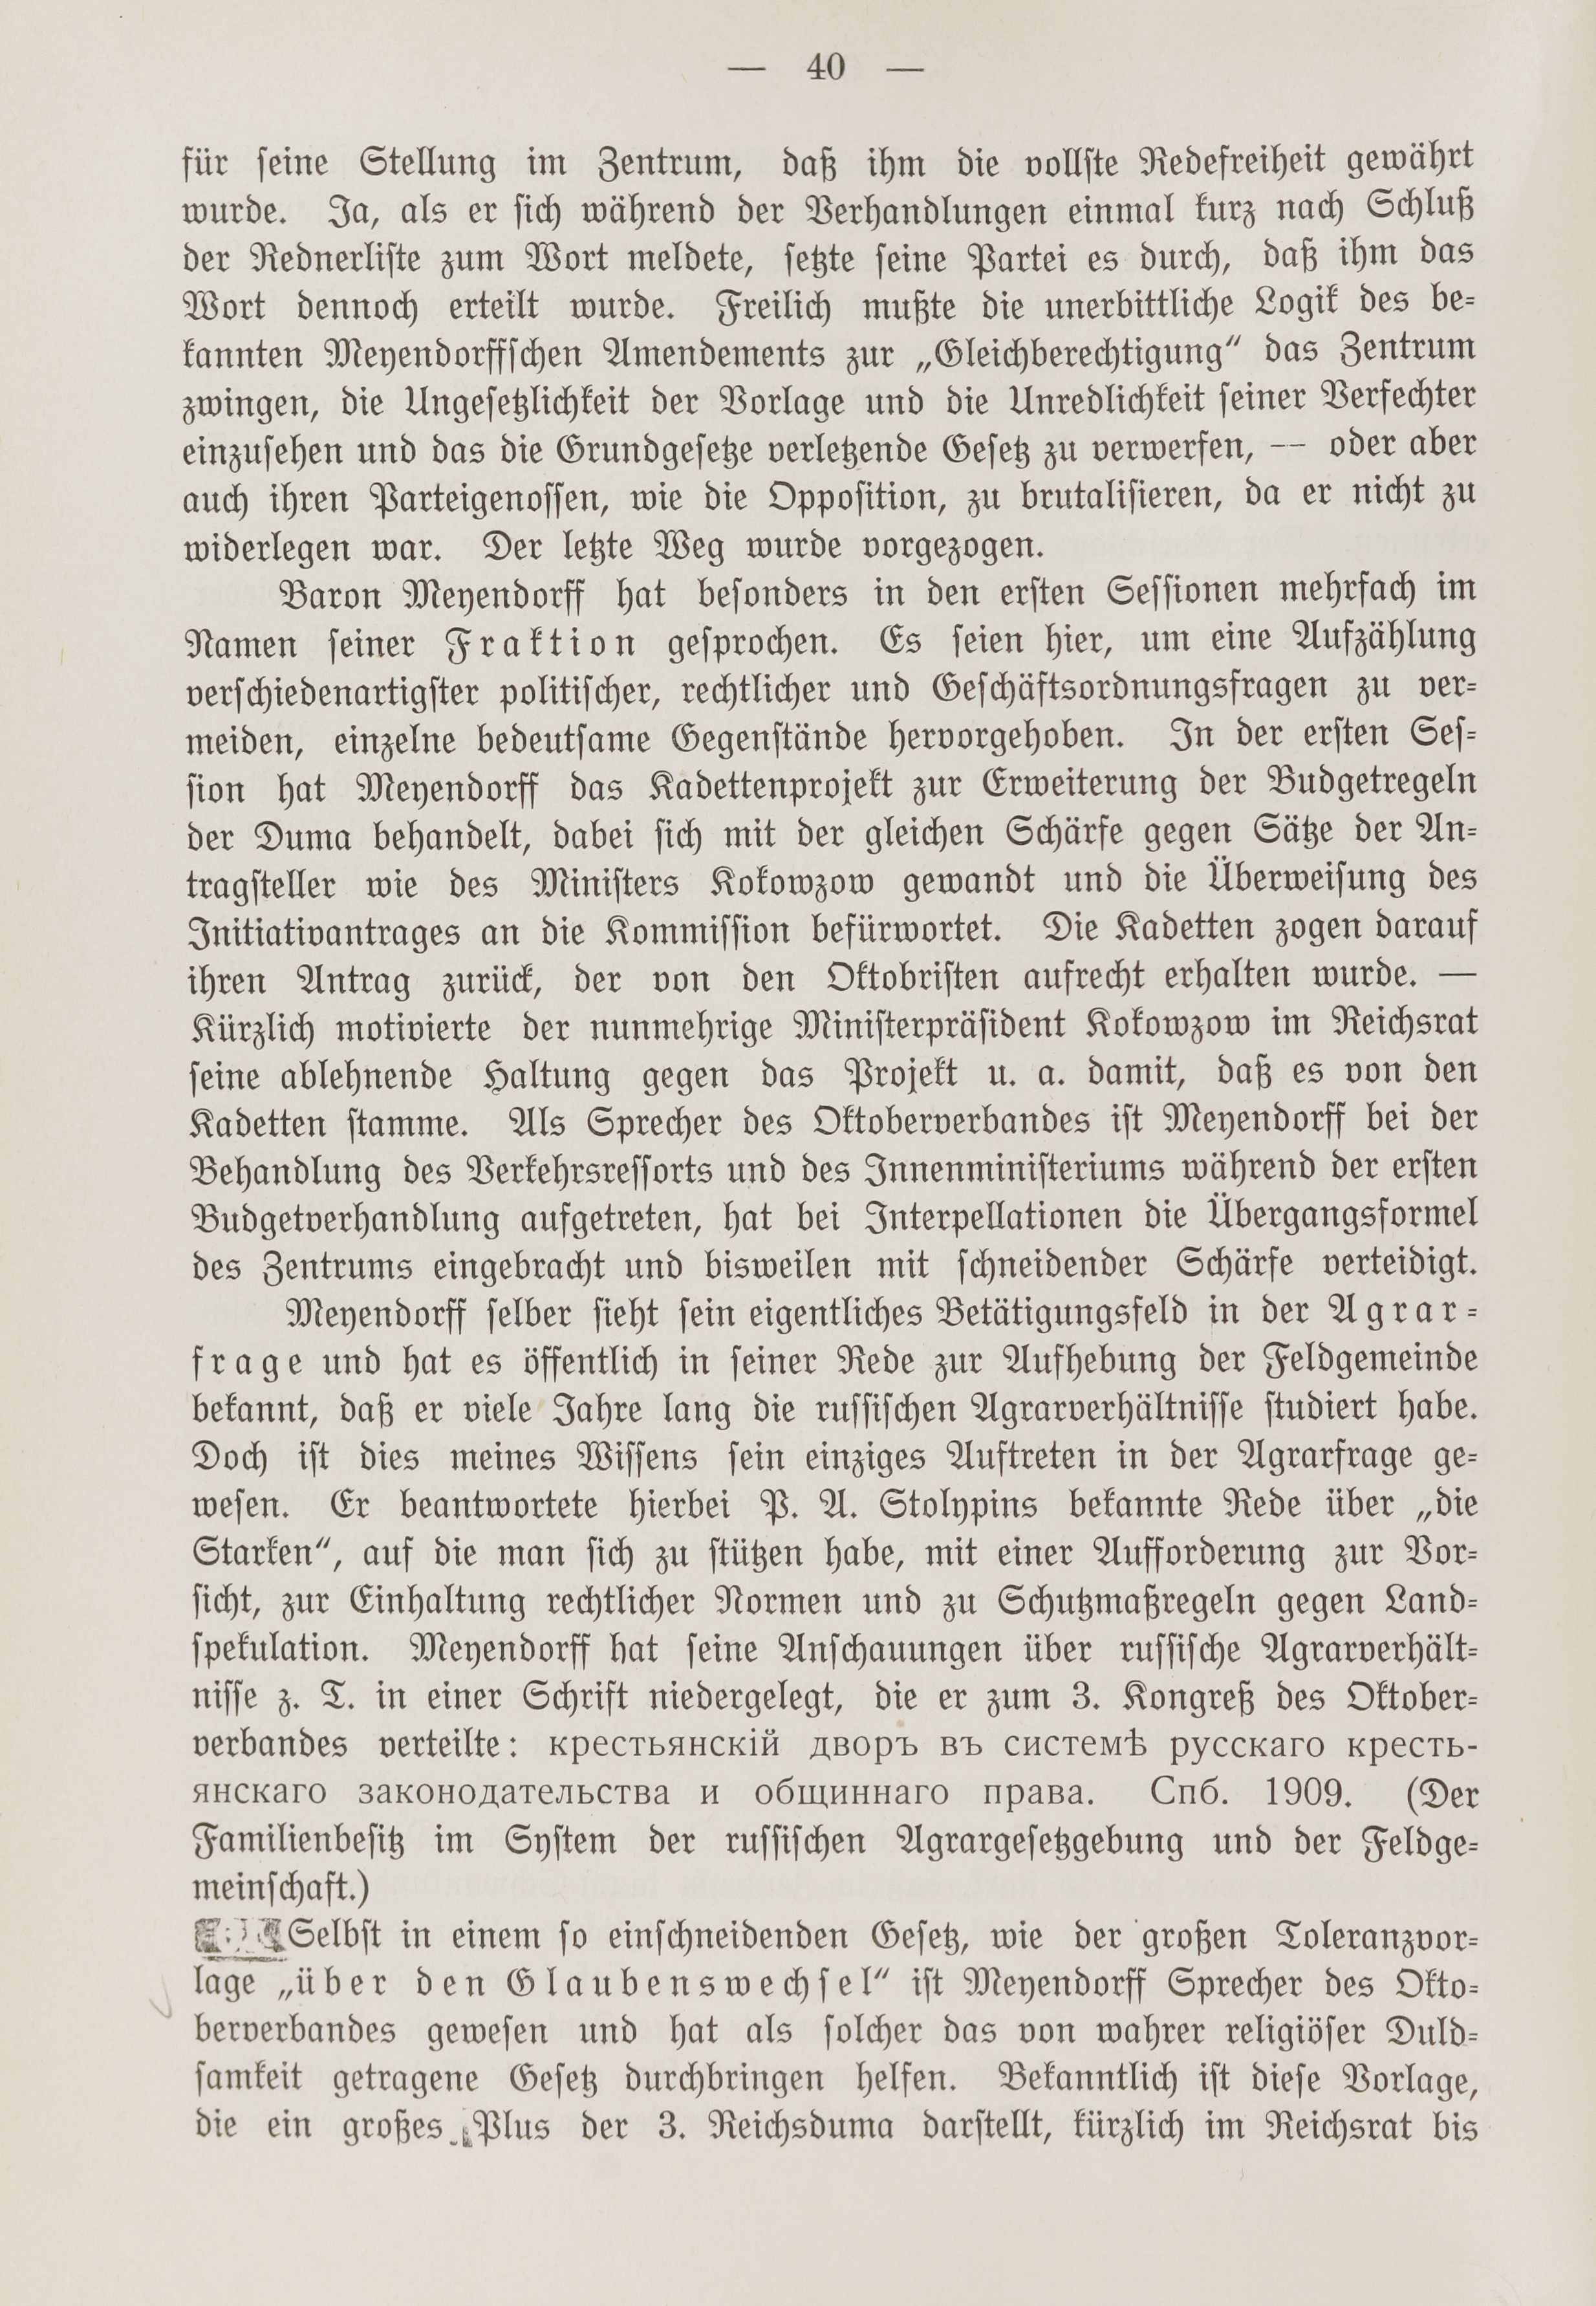 Deutsche Monatsschrift für Russland [1] (1912) | 47. (40) Main body of text